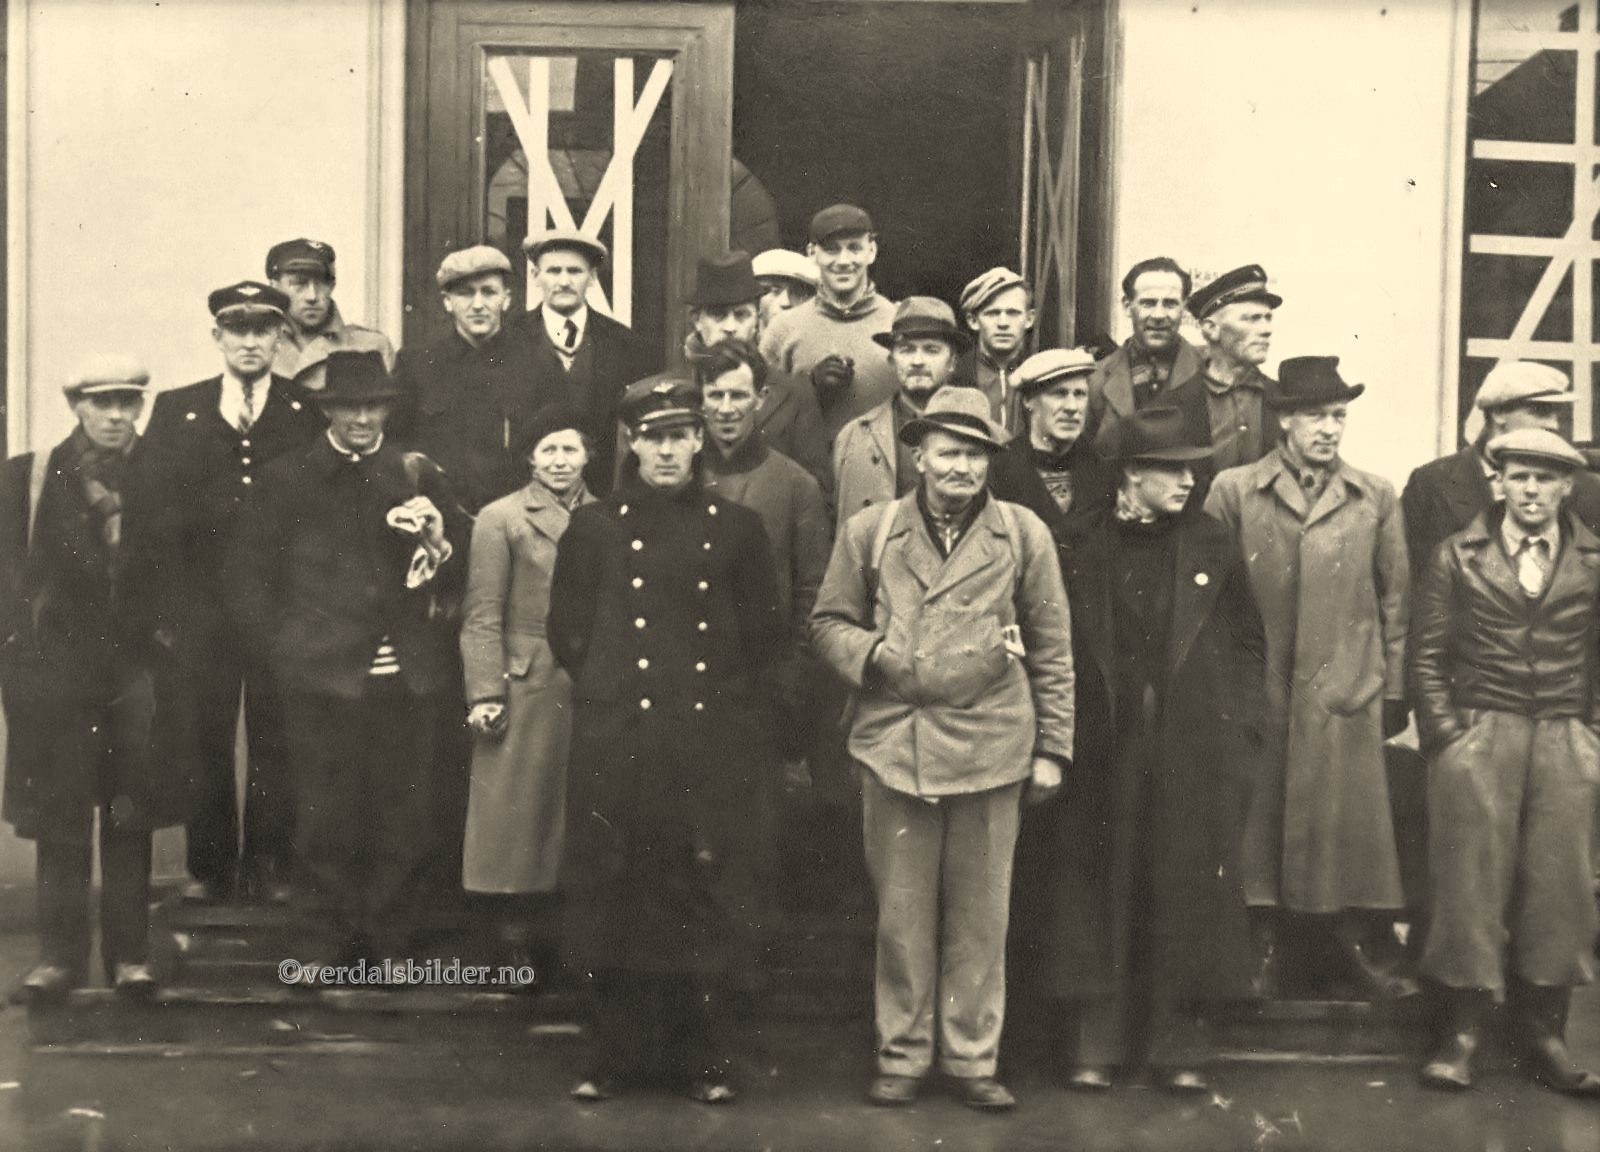  Disse personer, og tre karer fra Steinker samt Sigmund Hage, ble tatt som gisler av tyskerne  på Verdalsøra 21/4 1940. Her på trappa av Arbeiderforeningen i Trondheim. 